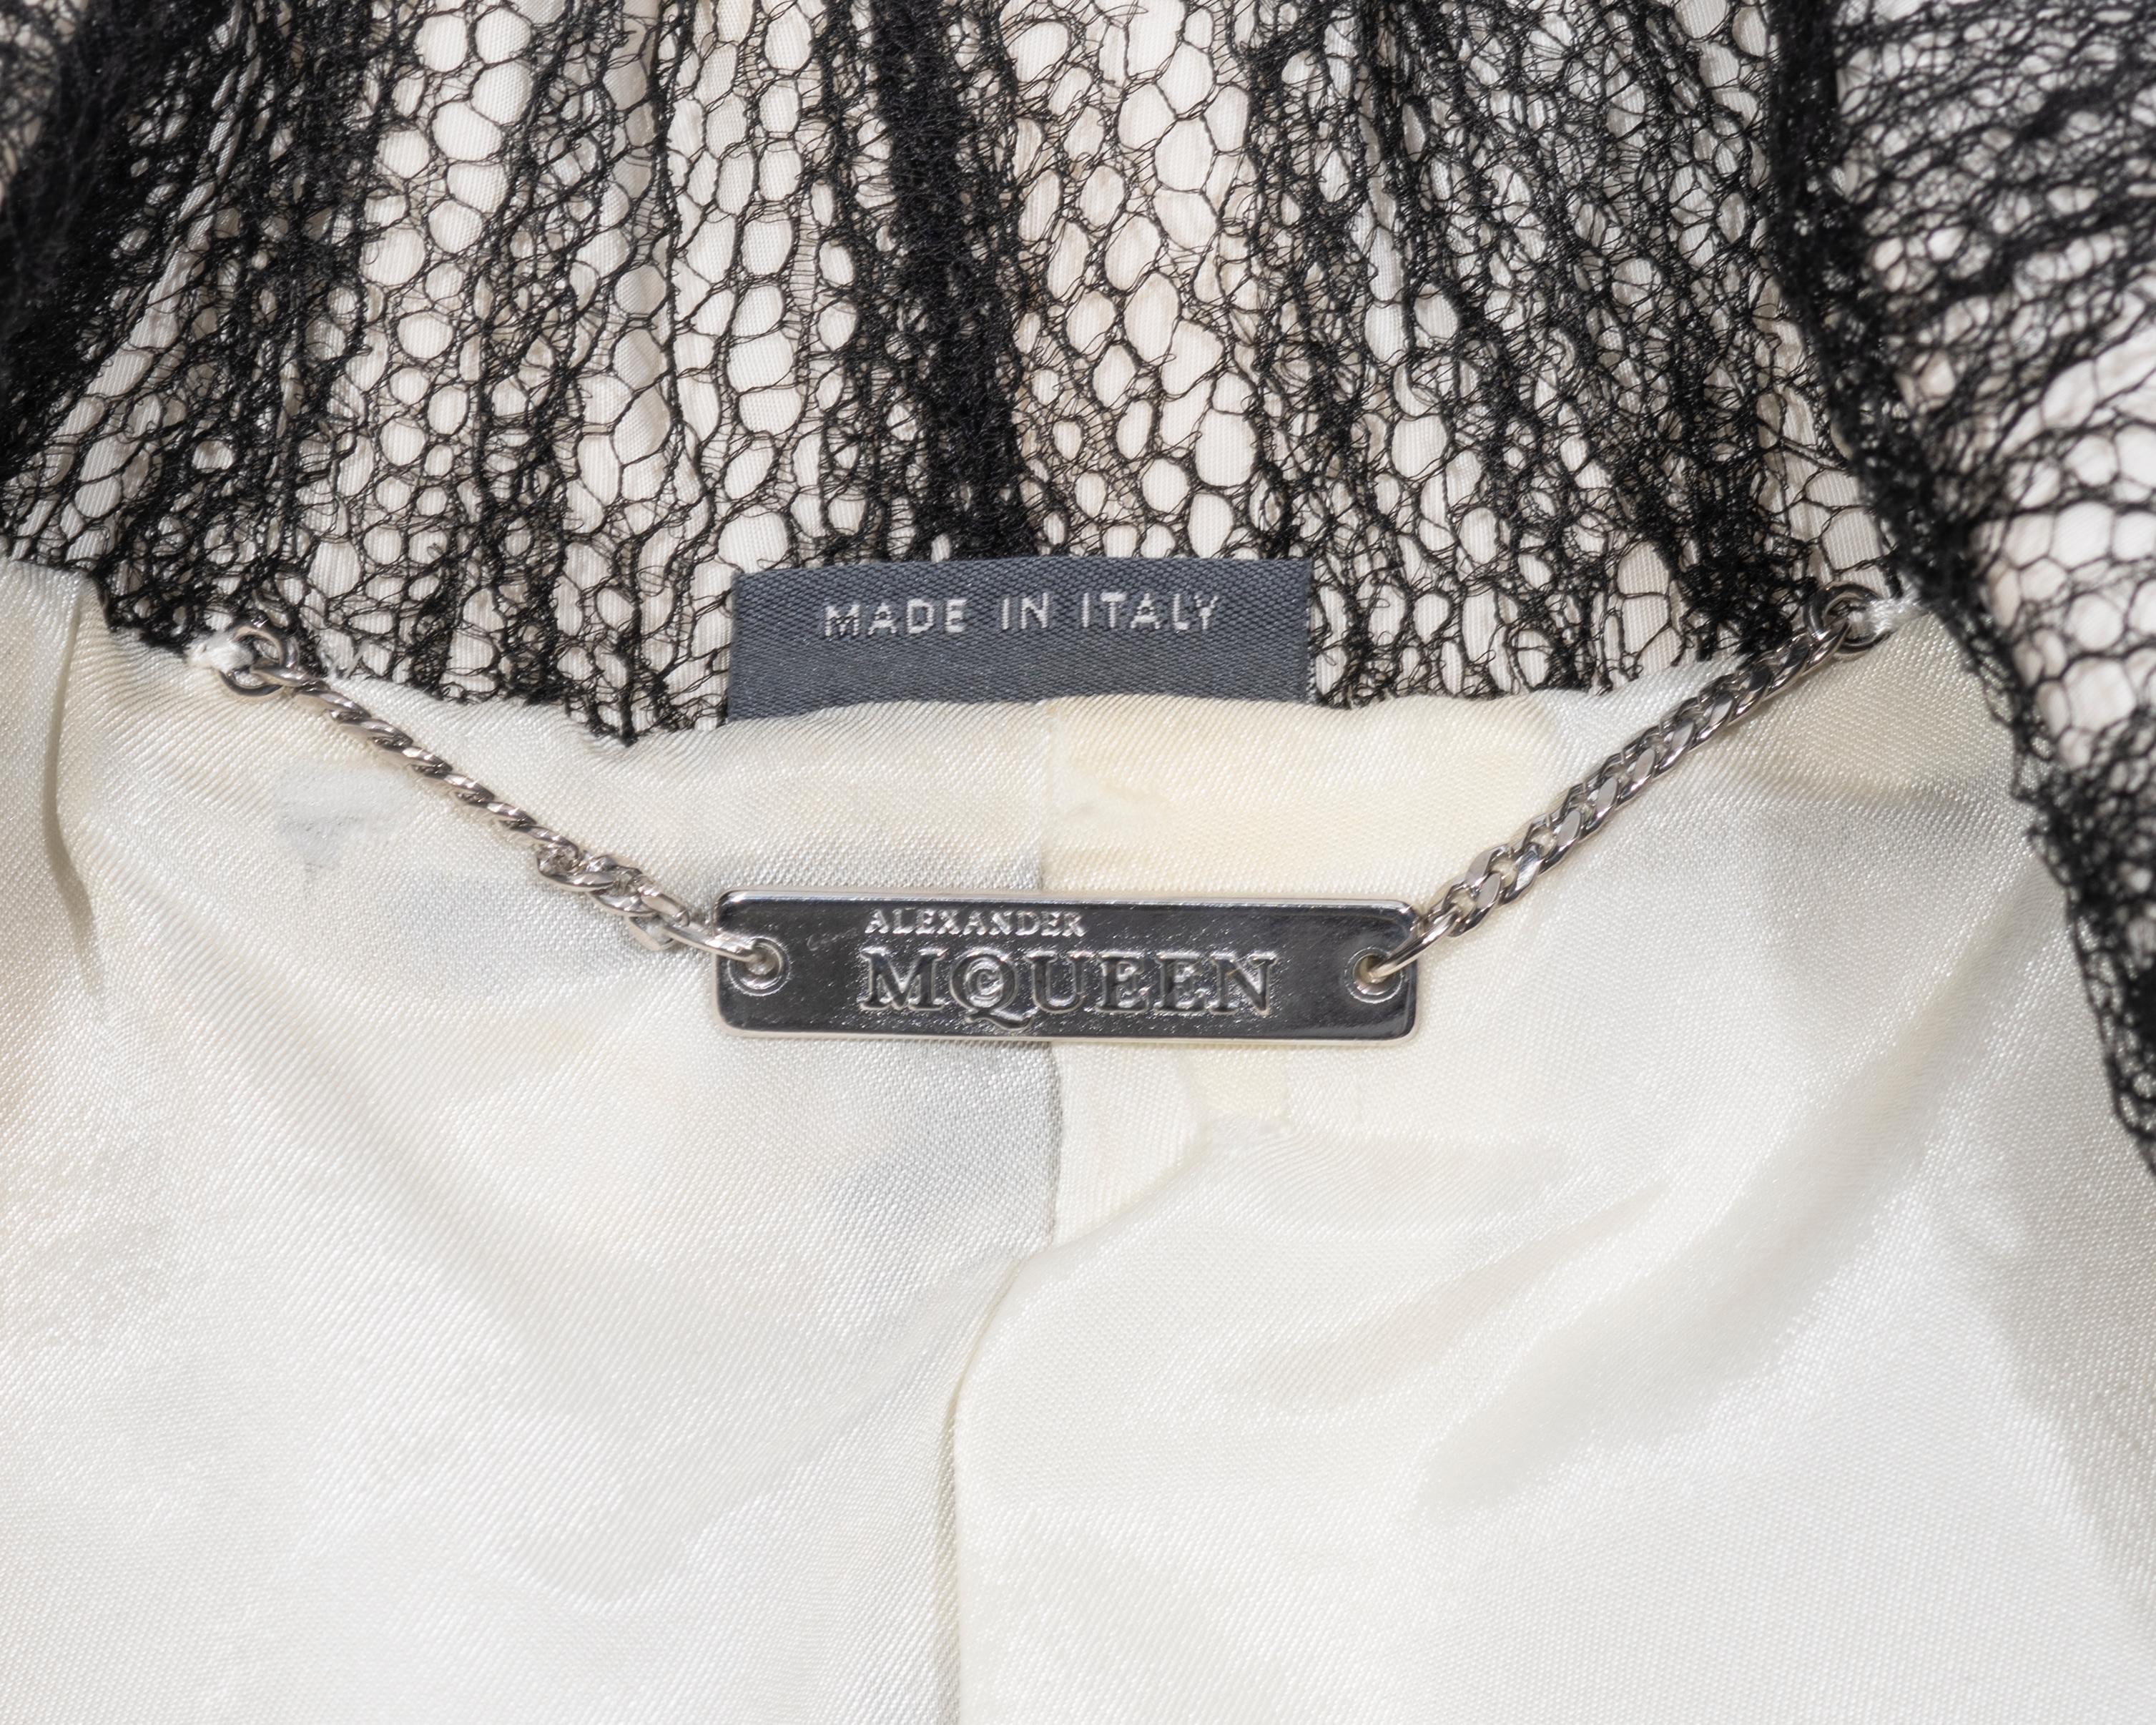 Alexander McQueen 'Sarabande' skirt suit, ss 2007 5